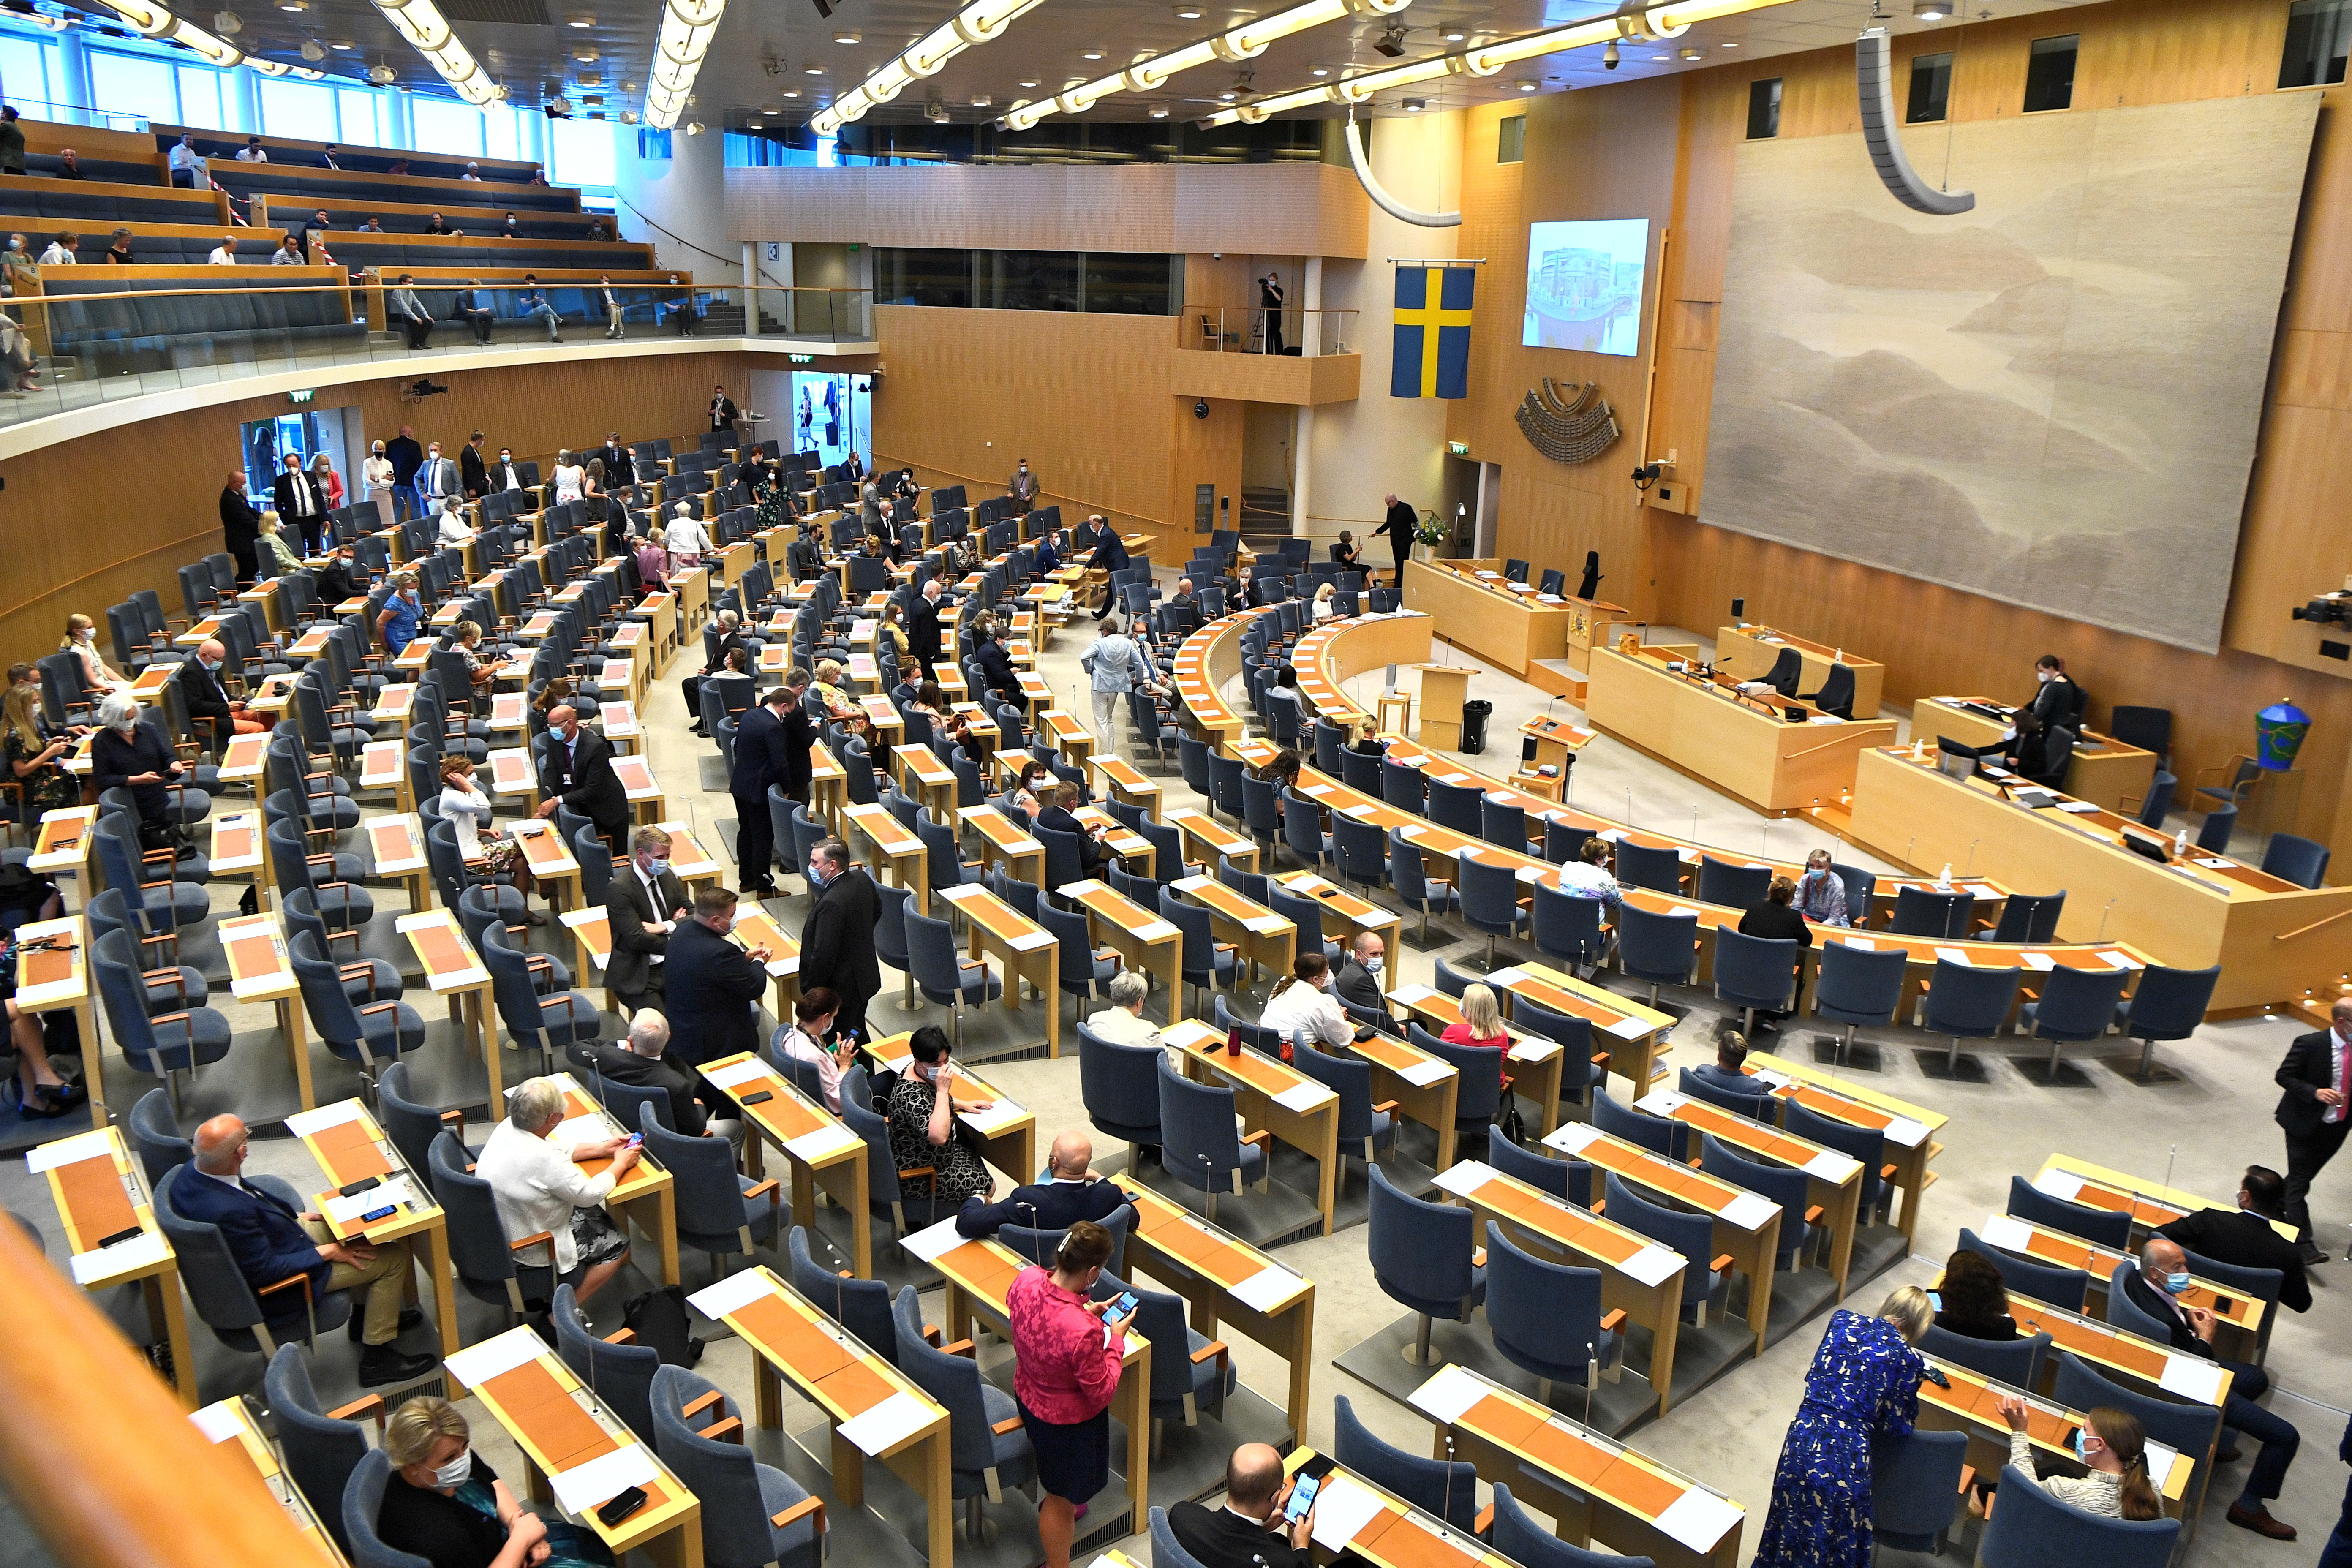 Članovi švedskog parlamenta stigli su na glasanje o nepovjerenju premijeru Stefanu Lofvenu, u Stockholmu u Švedskoj, 21. lipnja 2021. Novinska agencija TT / Claudio Bresciani putem REUTERS-a